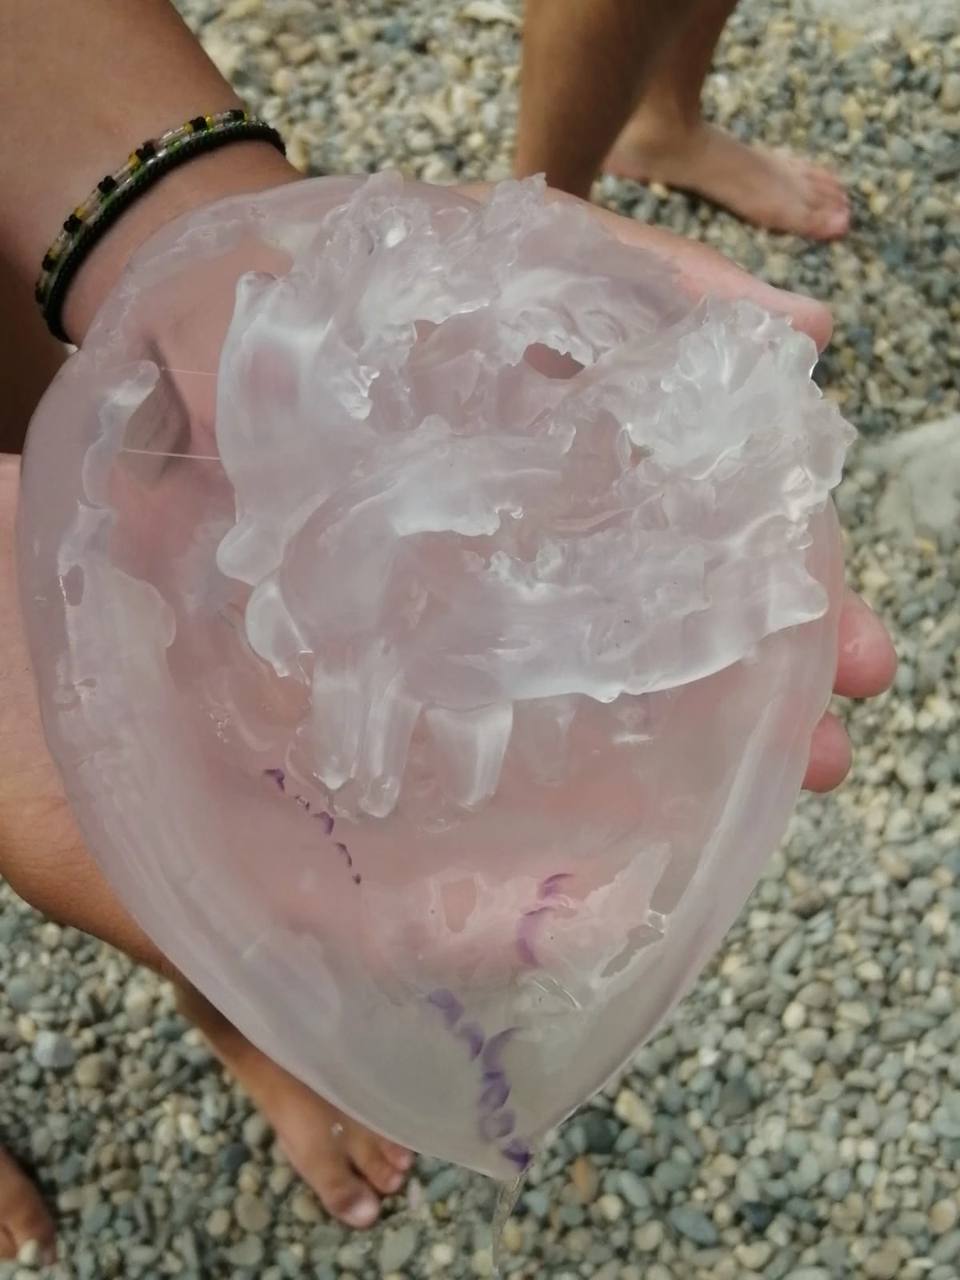 медузы в тунисе